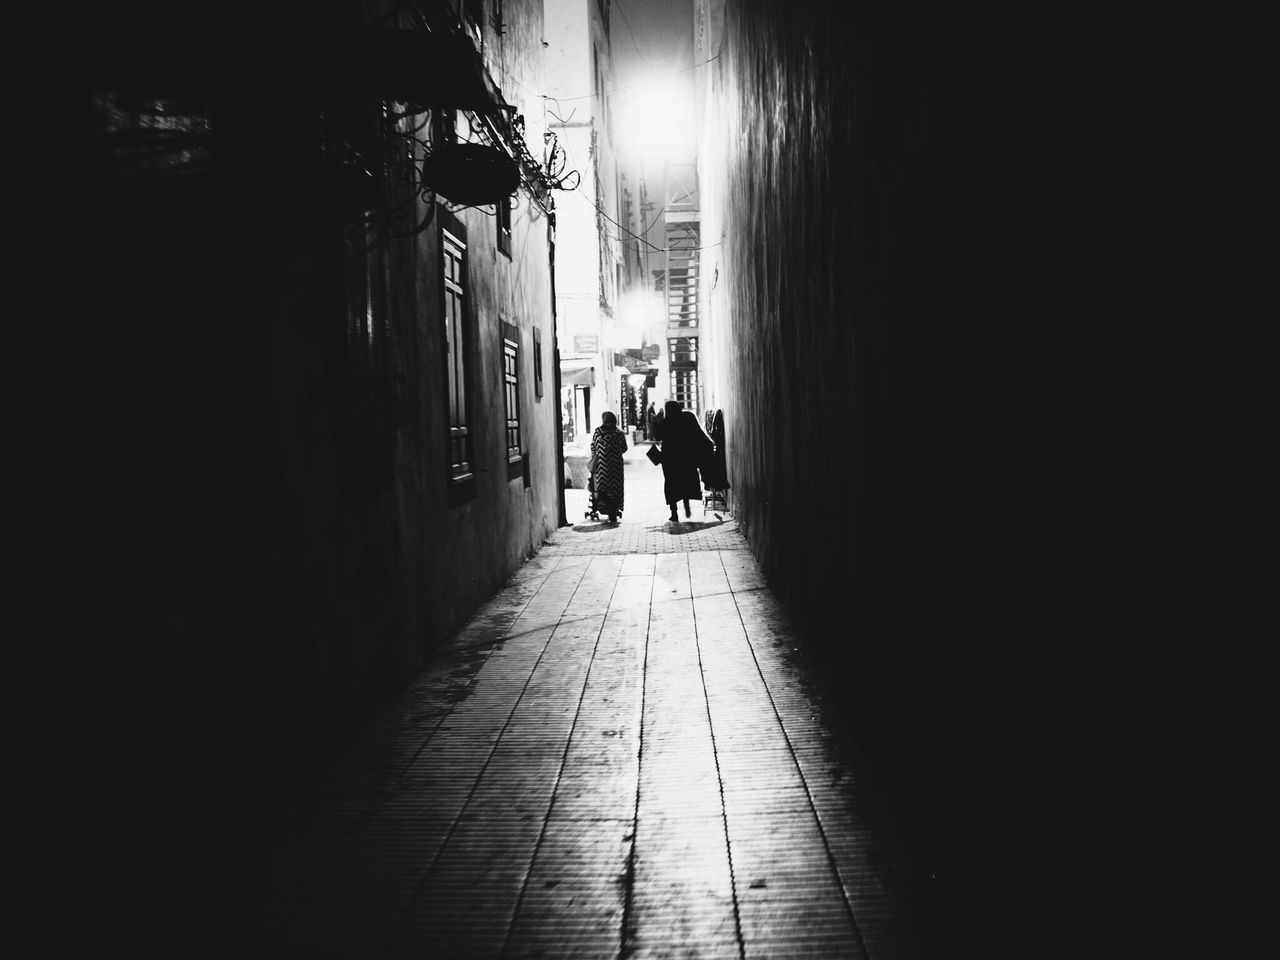 MAN WALKING ON WALKWAY IN CITY